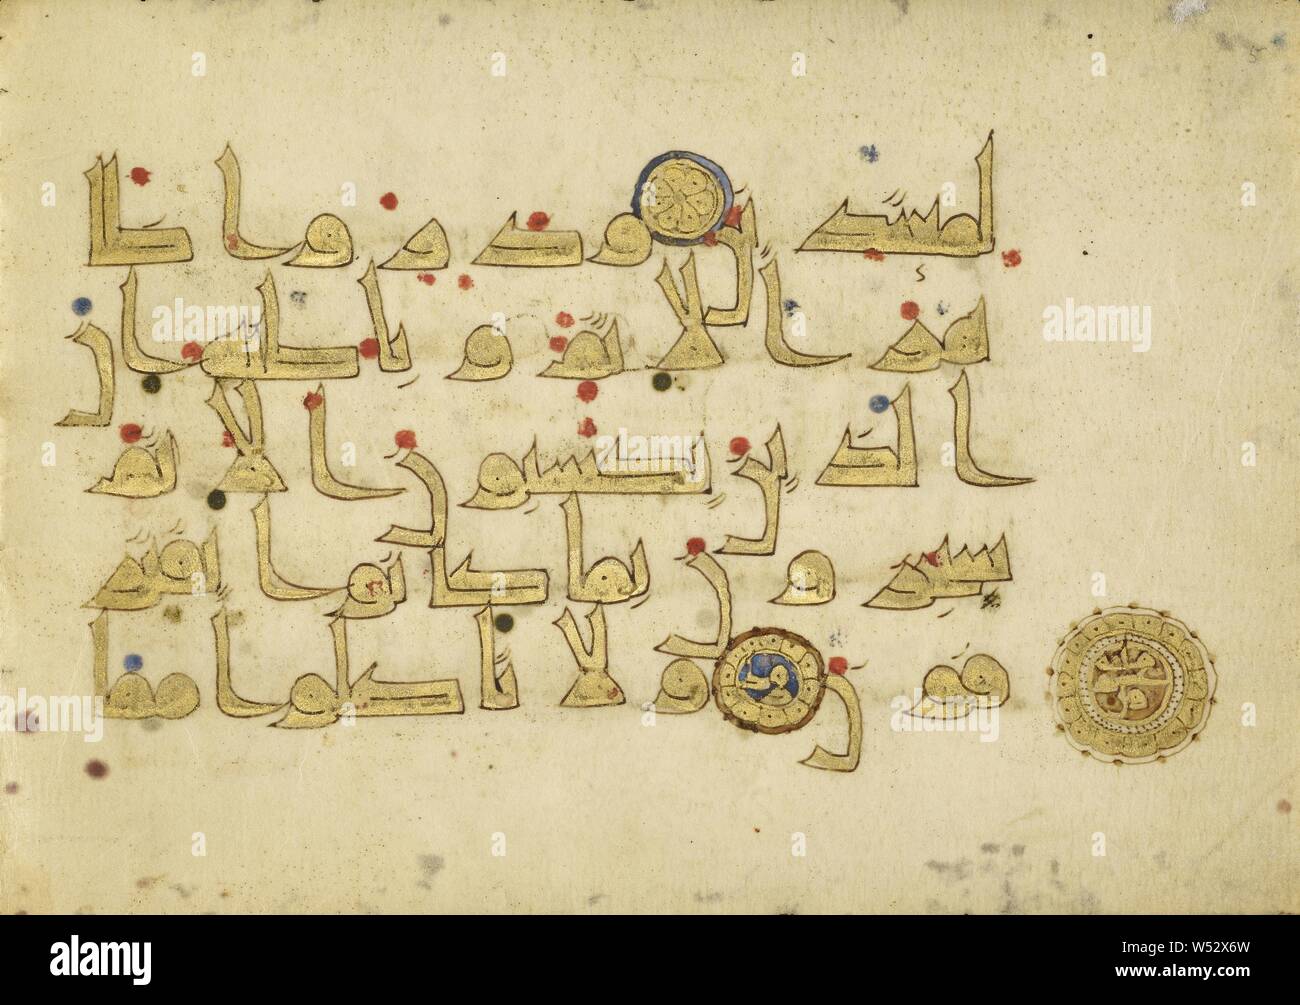 Coran Page, inconnu, peut-être Kairouan, Tunisie, 9e siècle, plume et encre,  l'or de la peinture et de la tempera couleurs, feuilles : 14,4 × 20,8 cm (5  11/16 x 8 3/16 in Photo Stock - Alamy